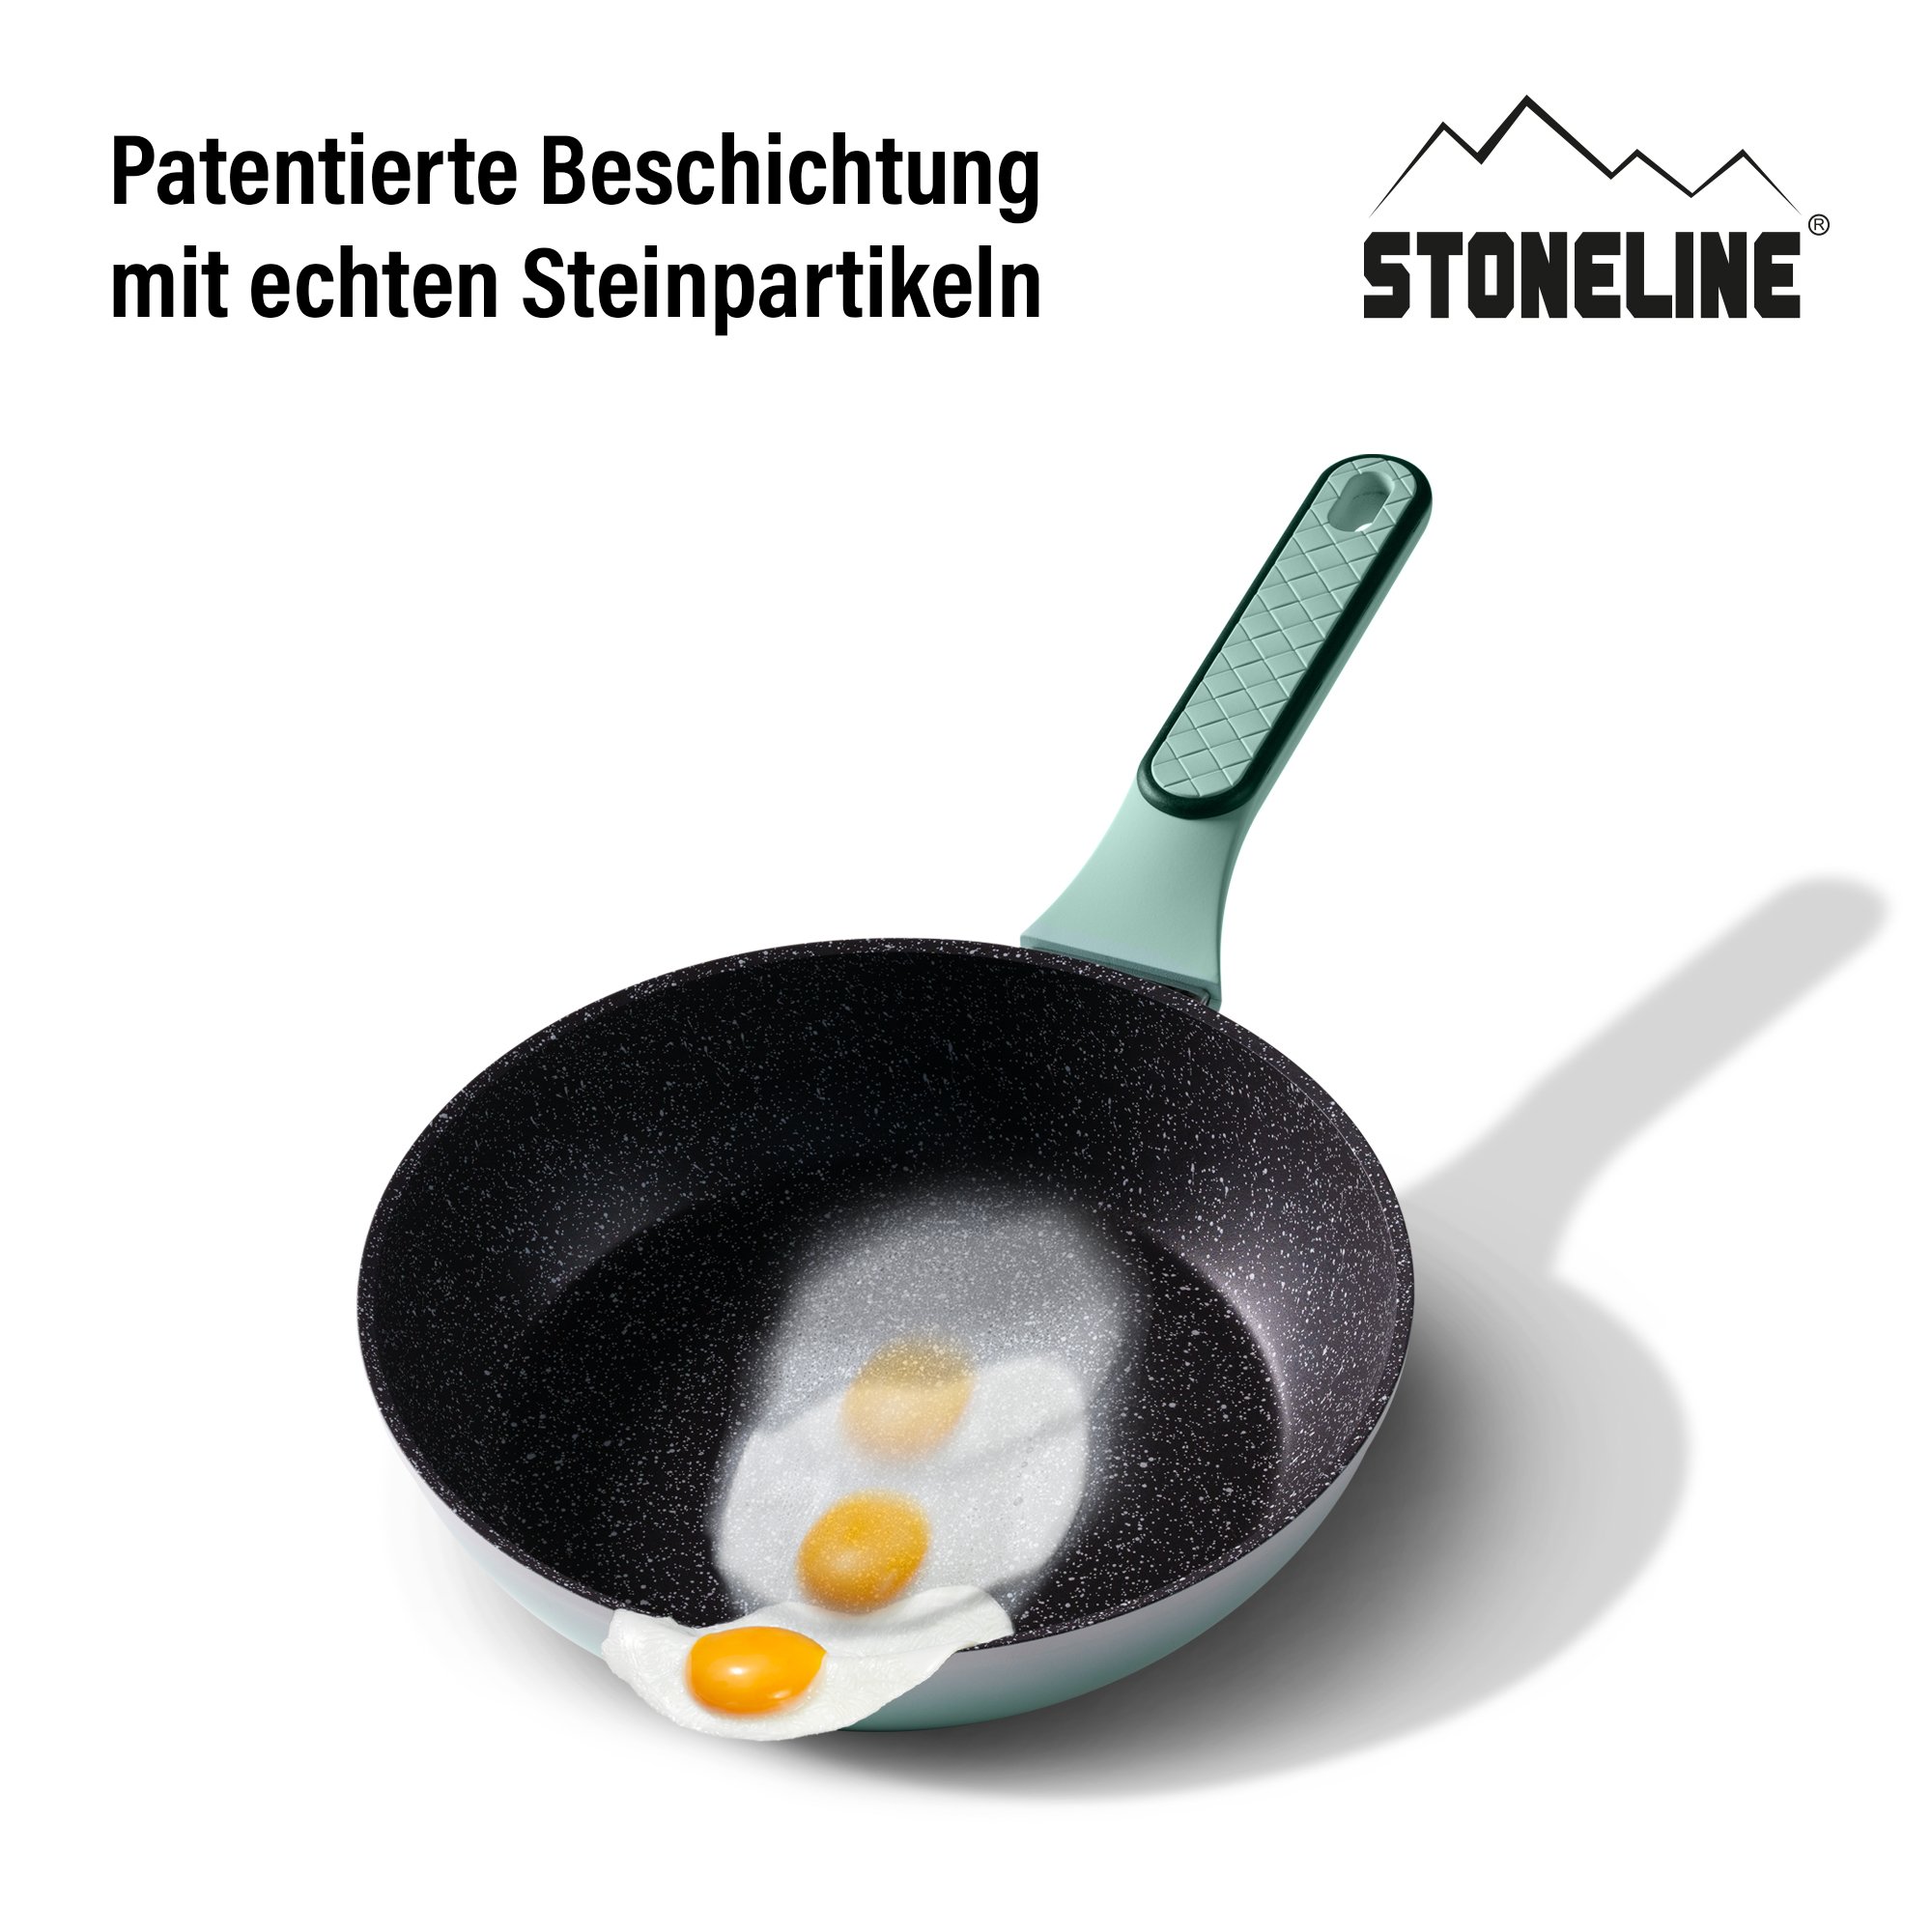 STONELINE® 11 pc Cookware Set, with Lids and Felt Protectors, Non-Stick Pots & Pans